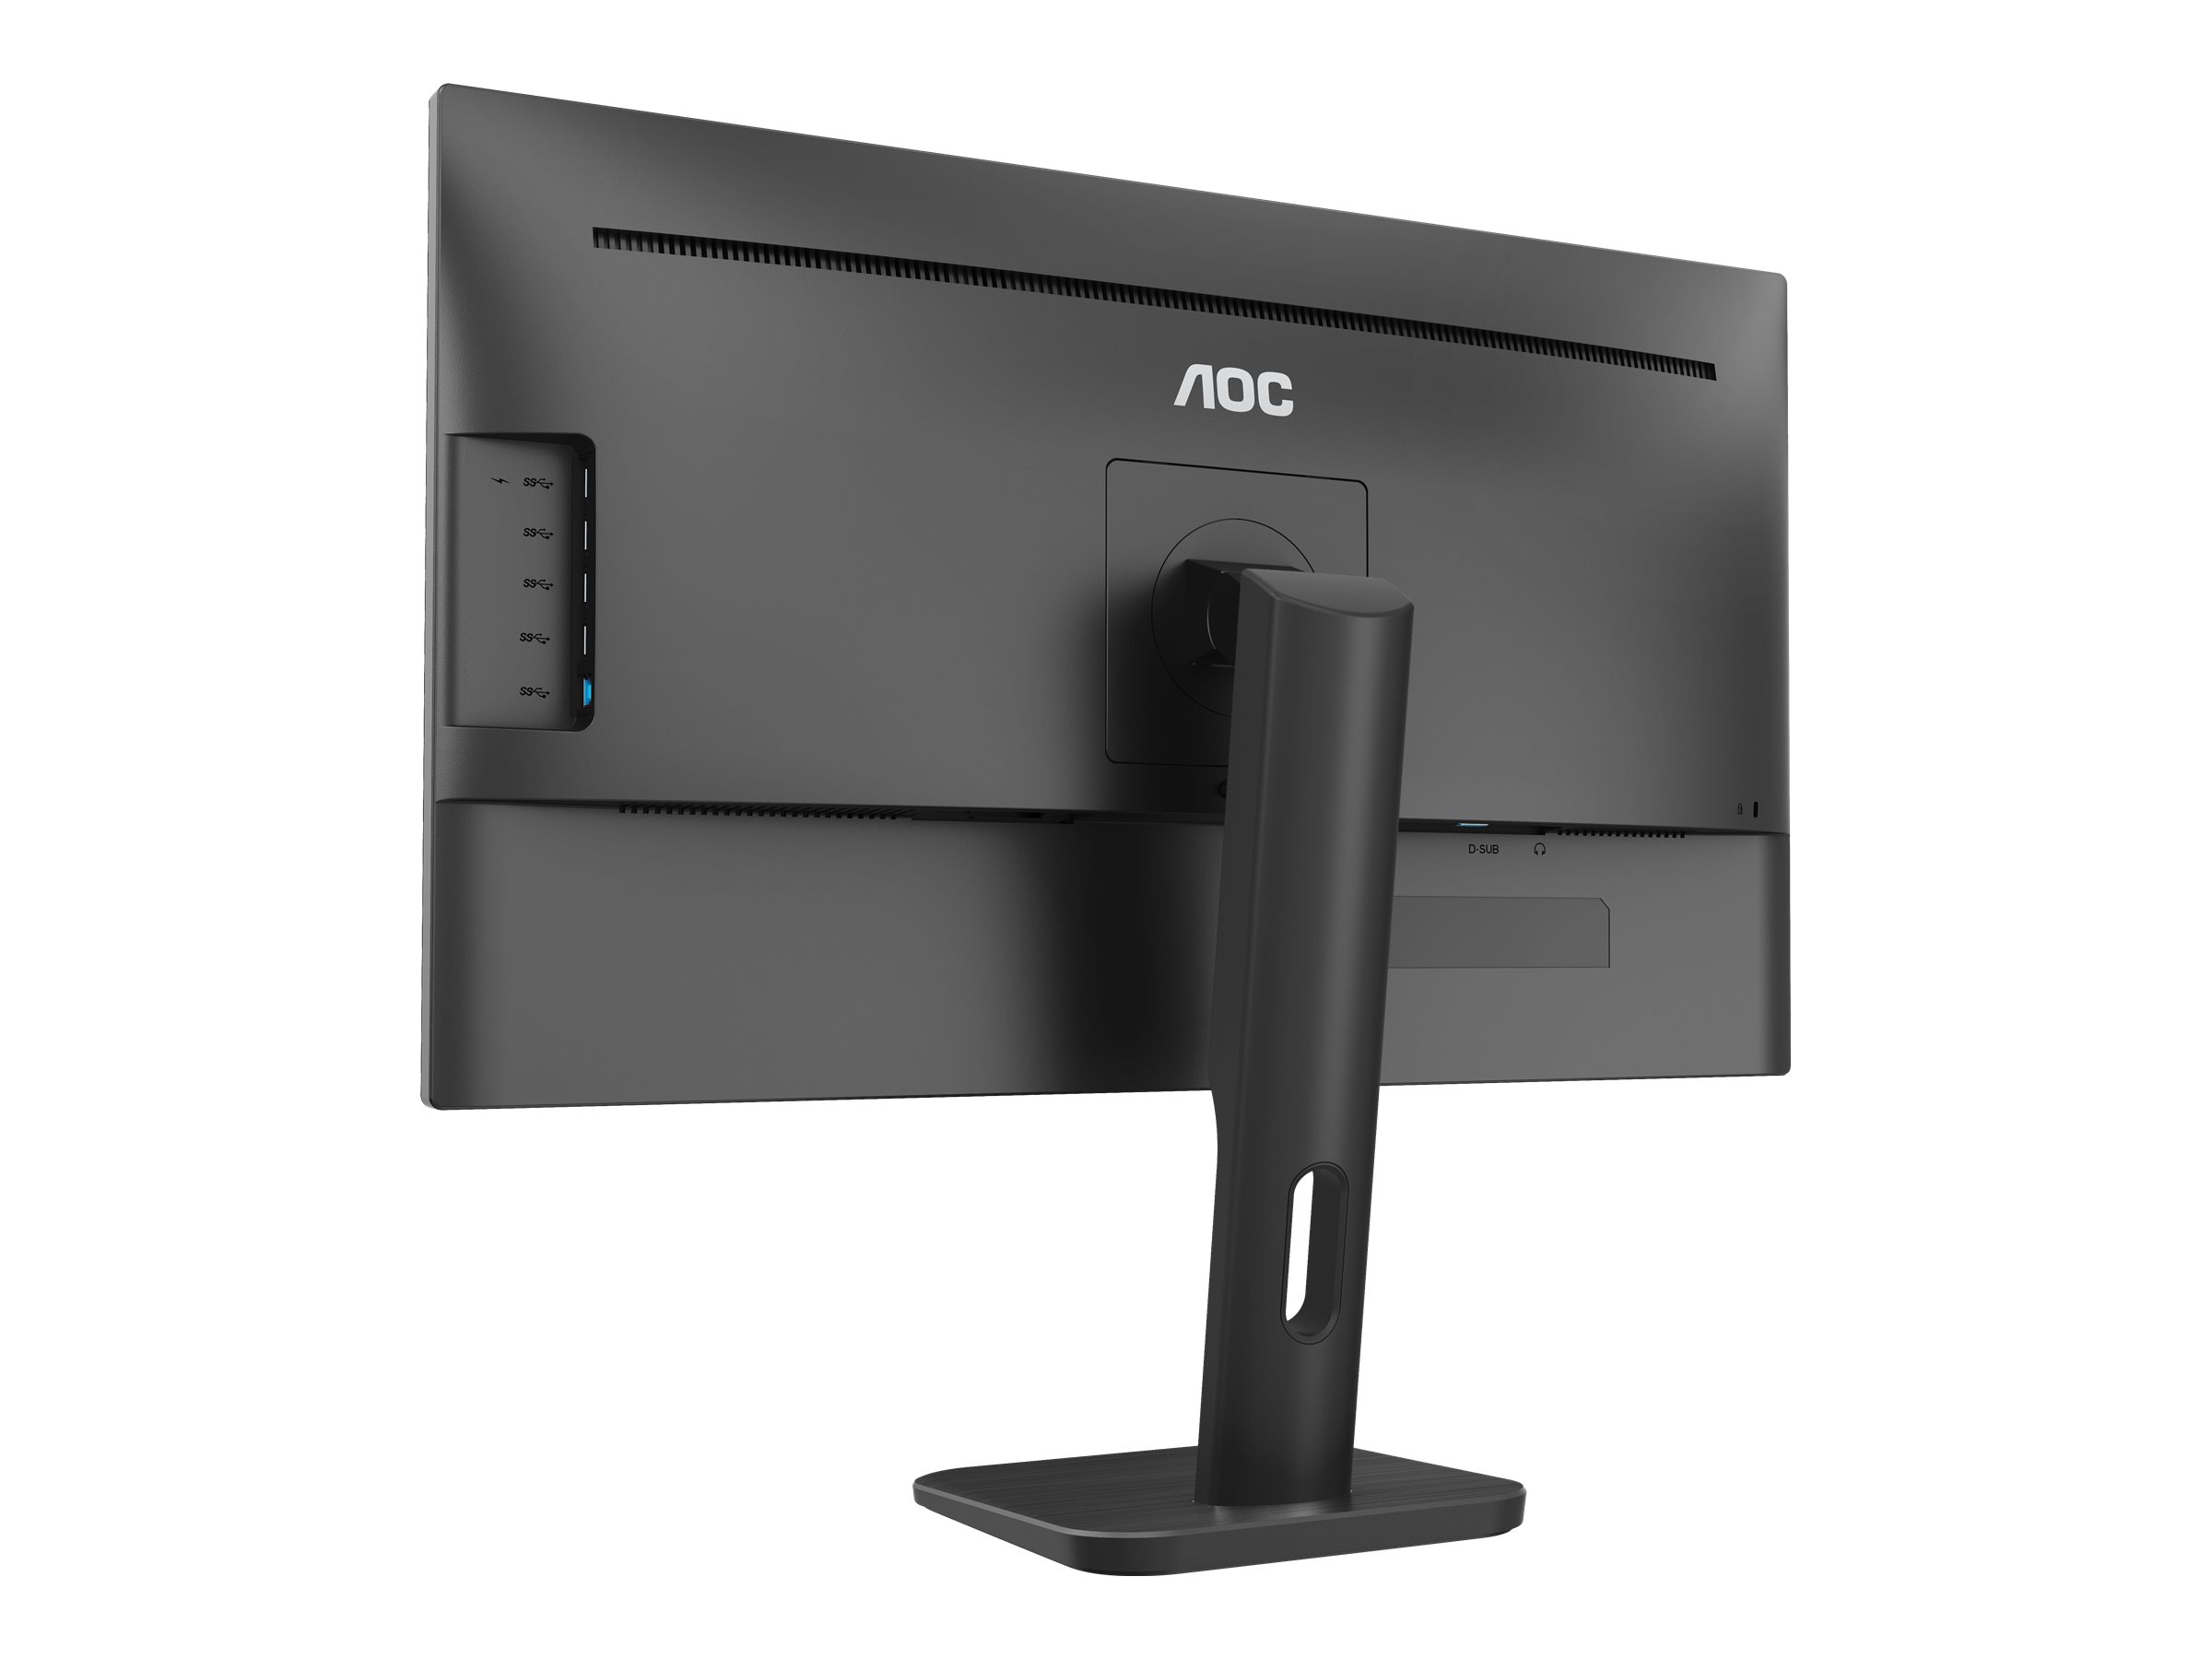 AOC X24P1 - LED-Monitor - 61 cm (24") - 1920 x 1200 Full HD (1080p)